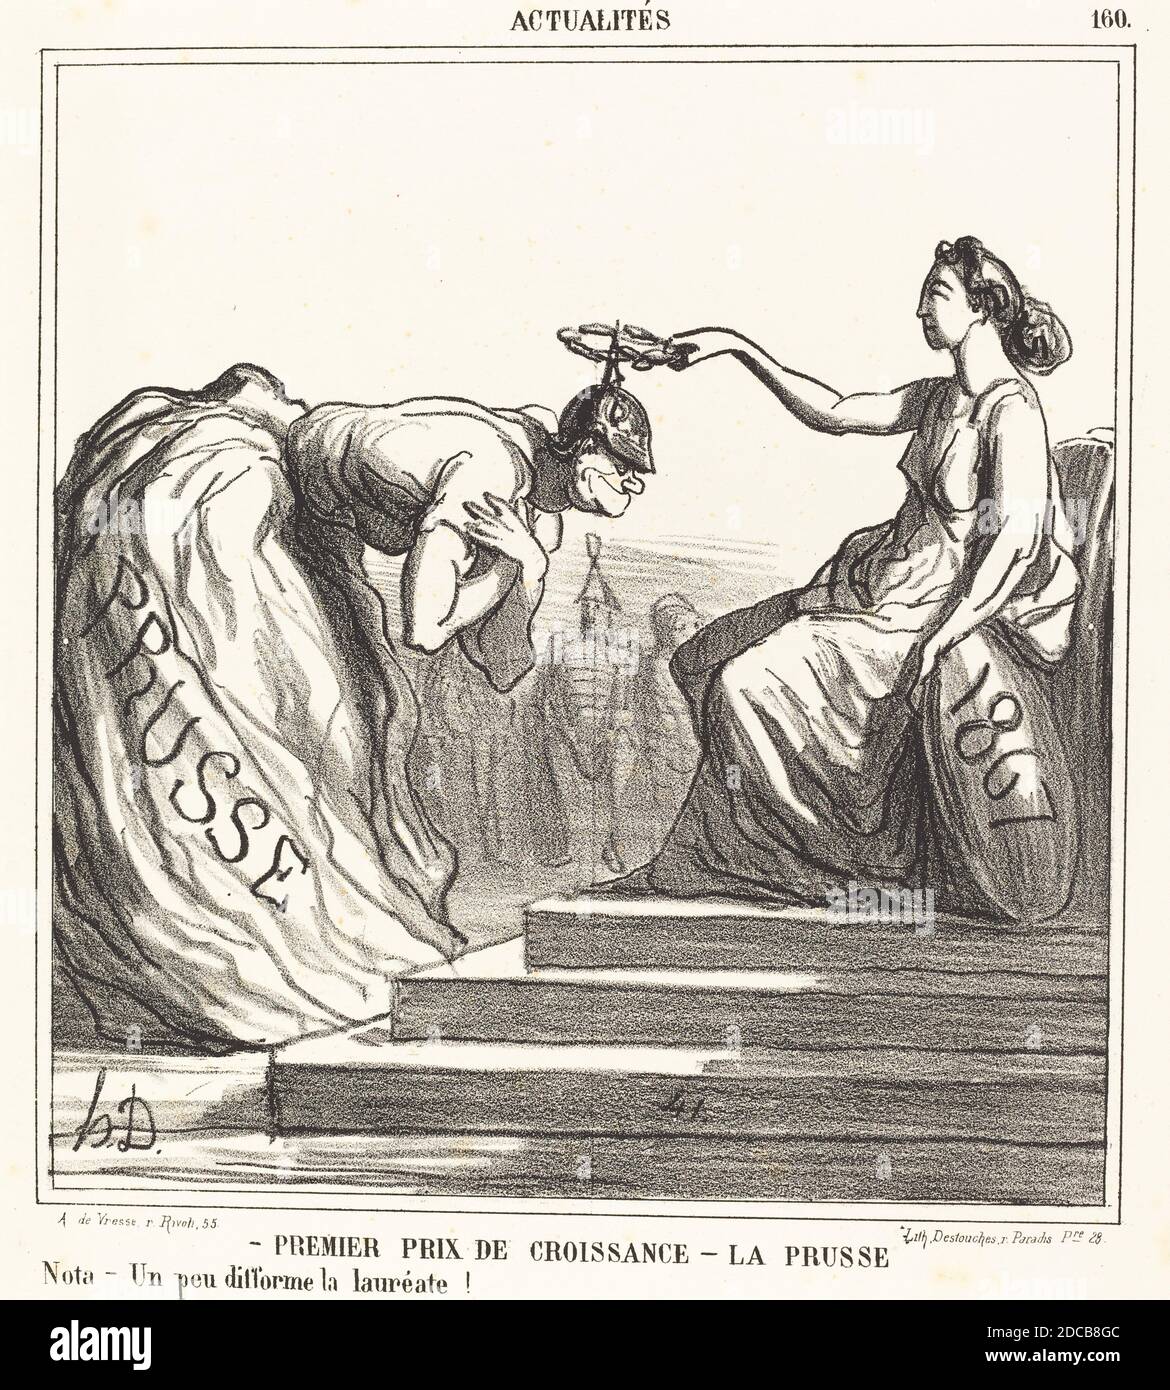 Honoré Daumier, (Künstler), Französisch, 1808 - 1879, Premier prix de croissance - La Presse, Actualités, (Serie), 1867, Lithographie Stockfoto